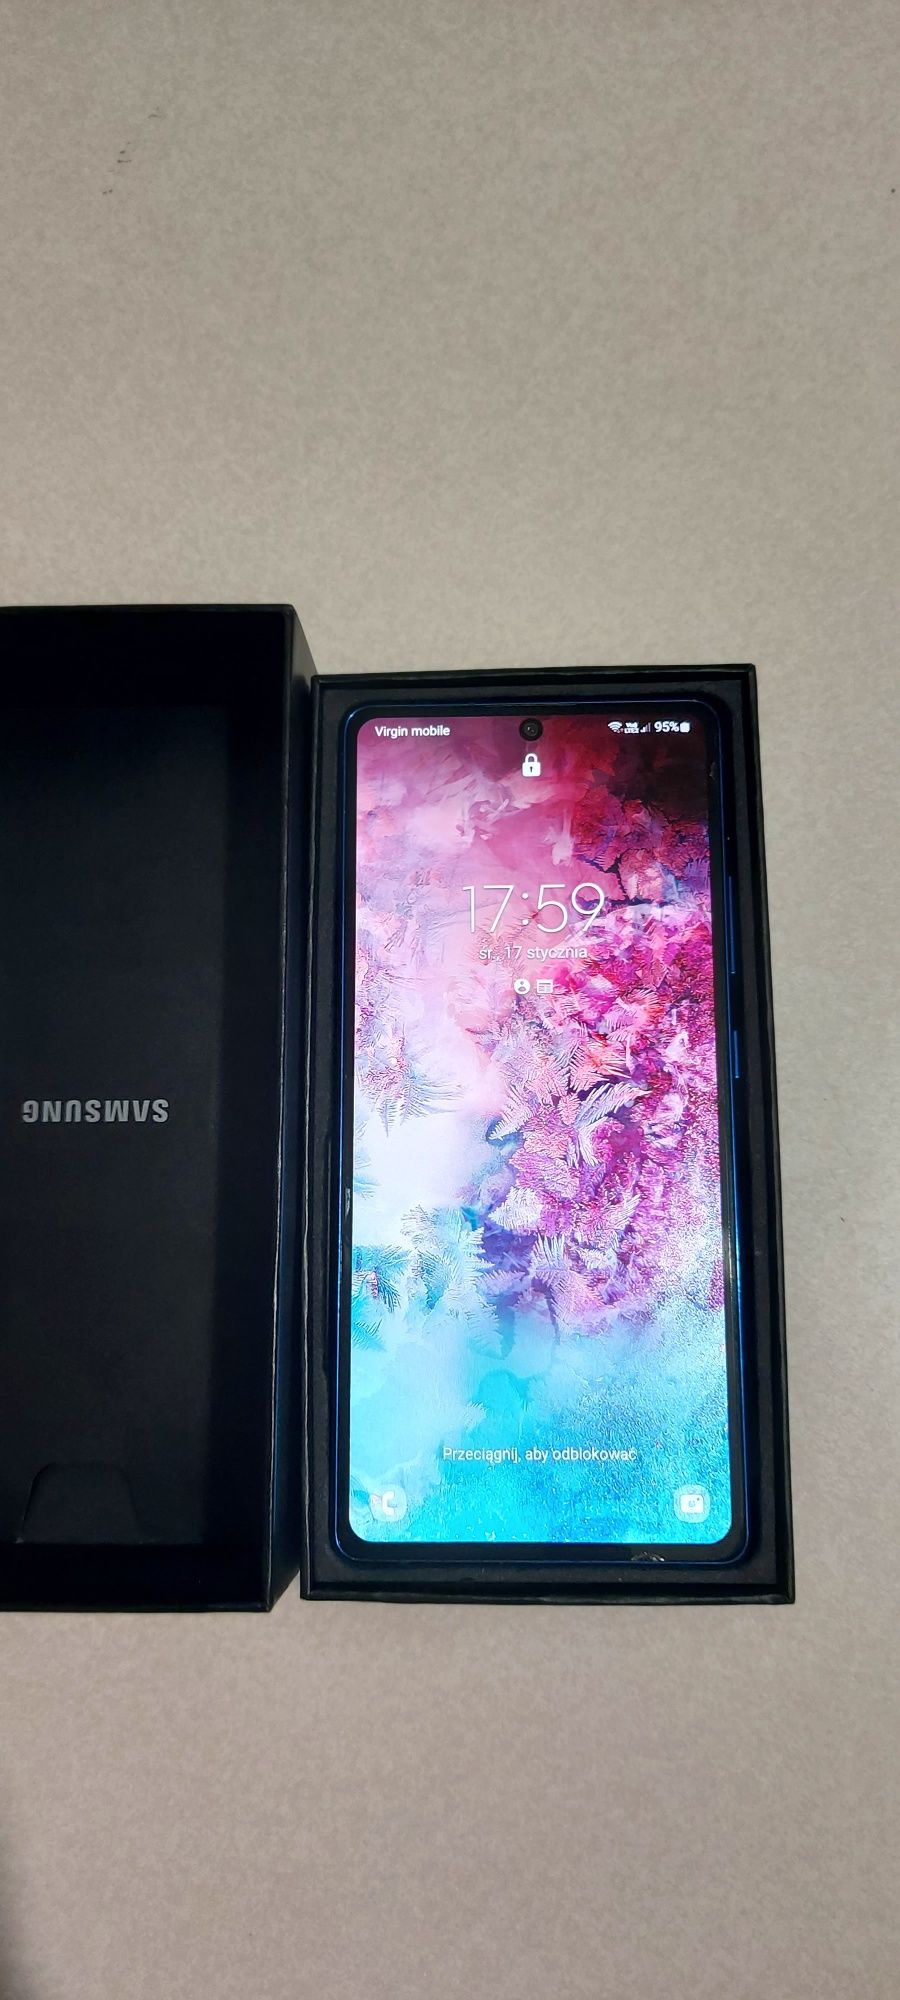 Samsung Galaxy S 10 lite